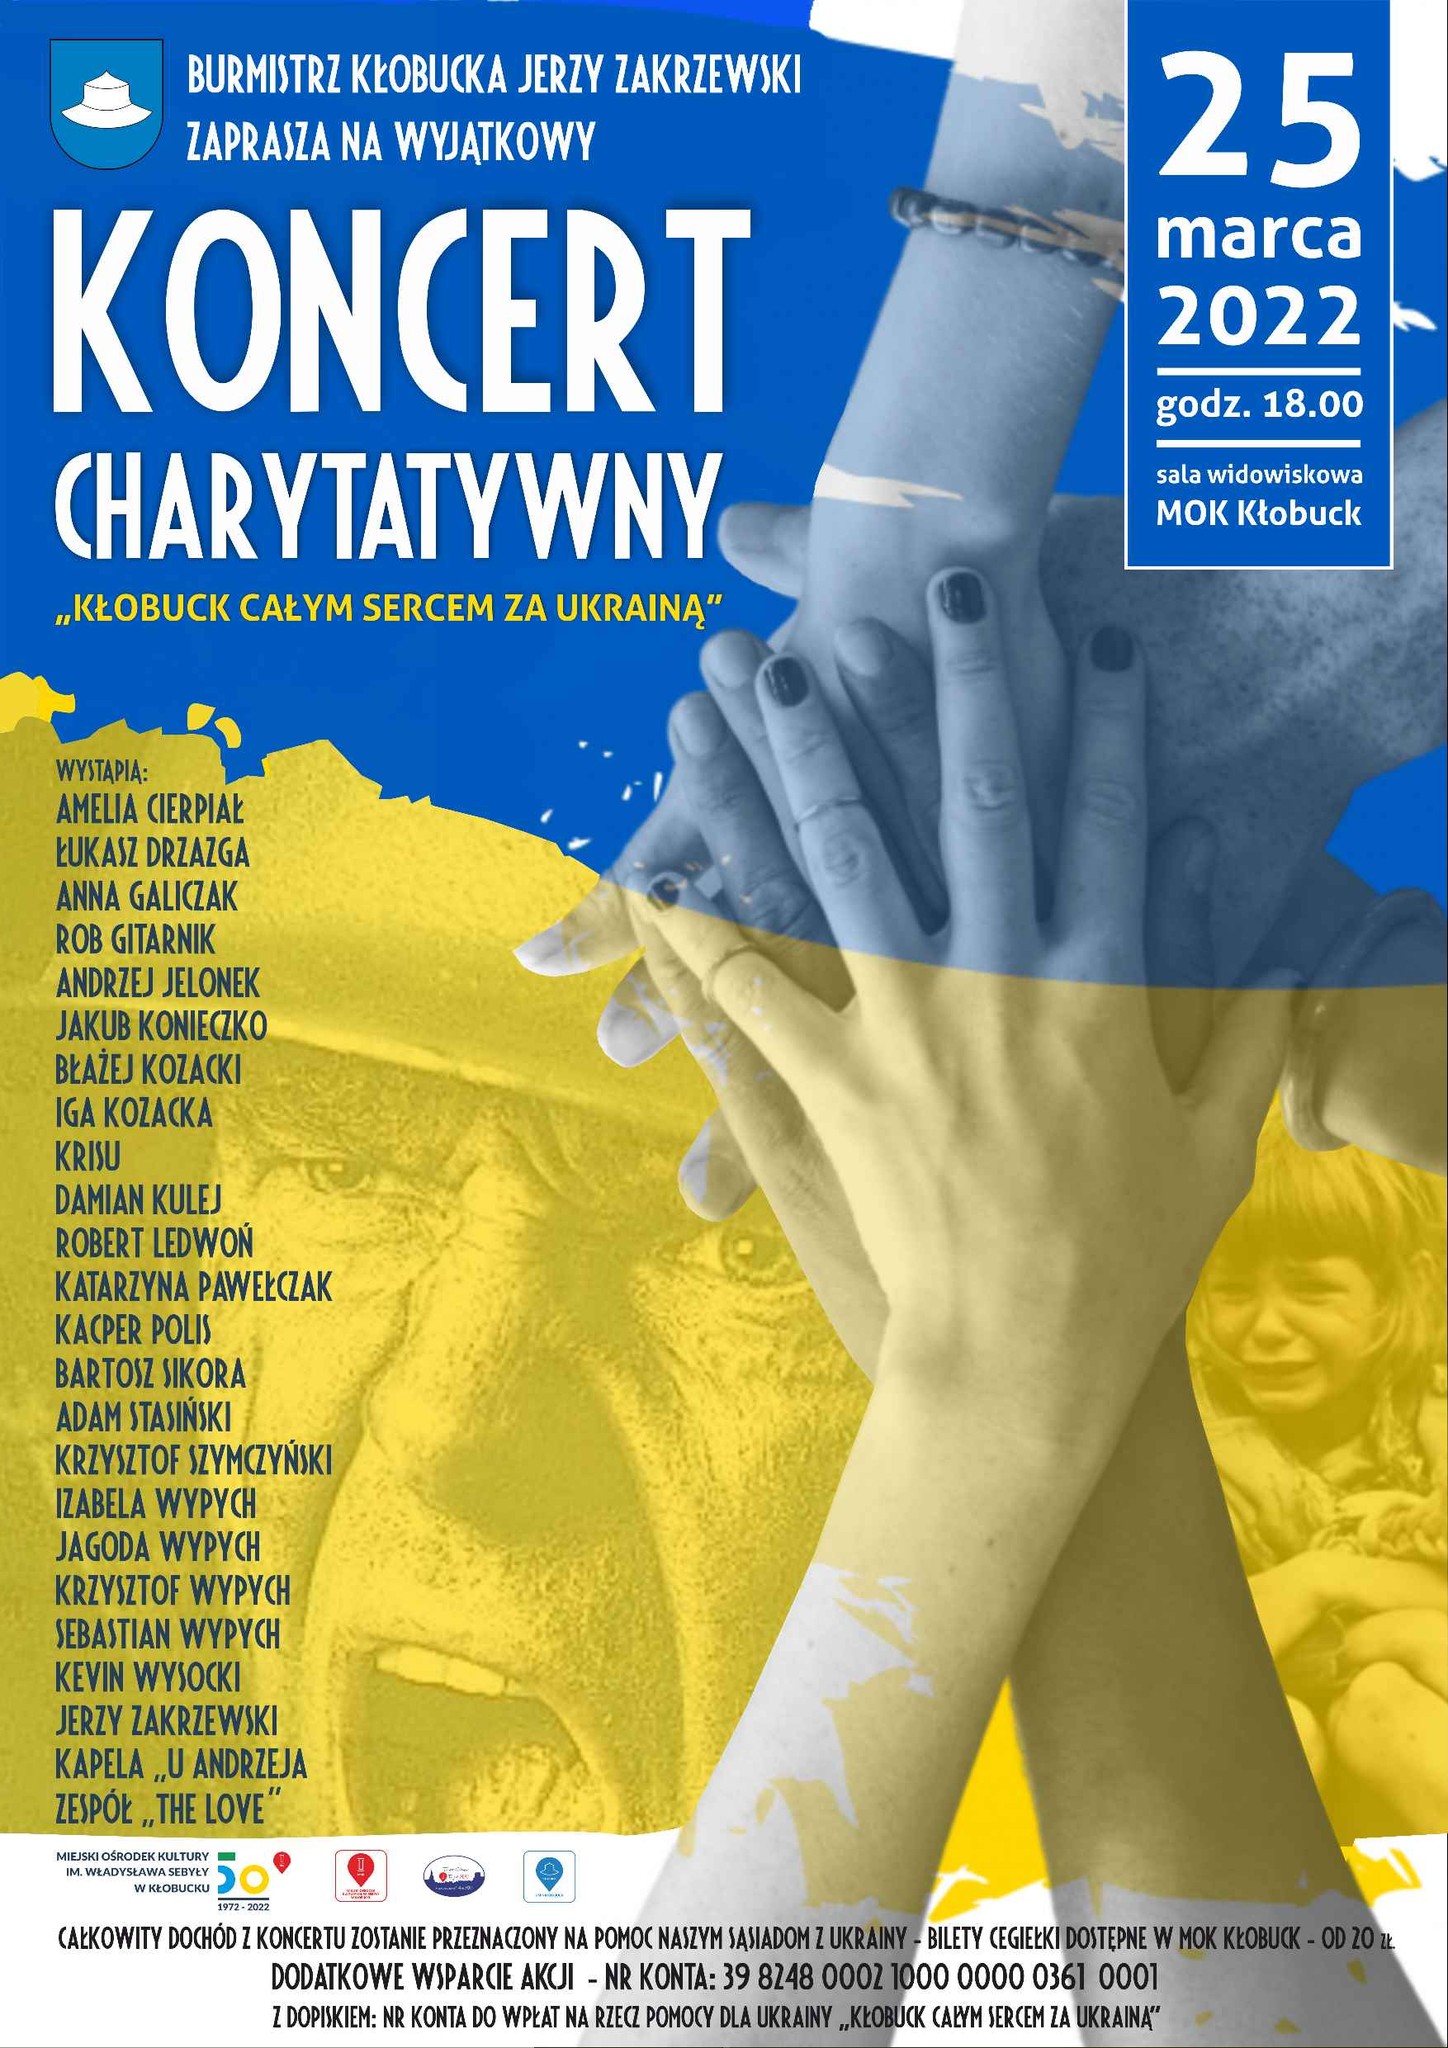 Kłobuck całym sercem z Ukrainą. Wyjątkowy koncert już 25 marca o godz. 18:00 6